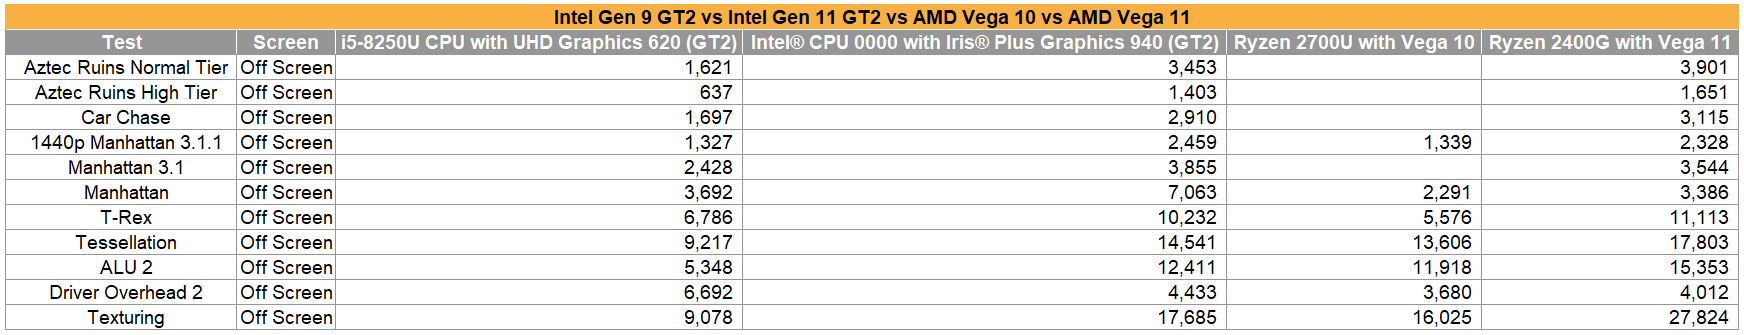 iGPUs Intel Iris Plus 940 vs Vega 10 Vs Vega 11 Vs UHD 620 GT2